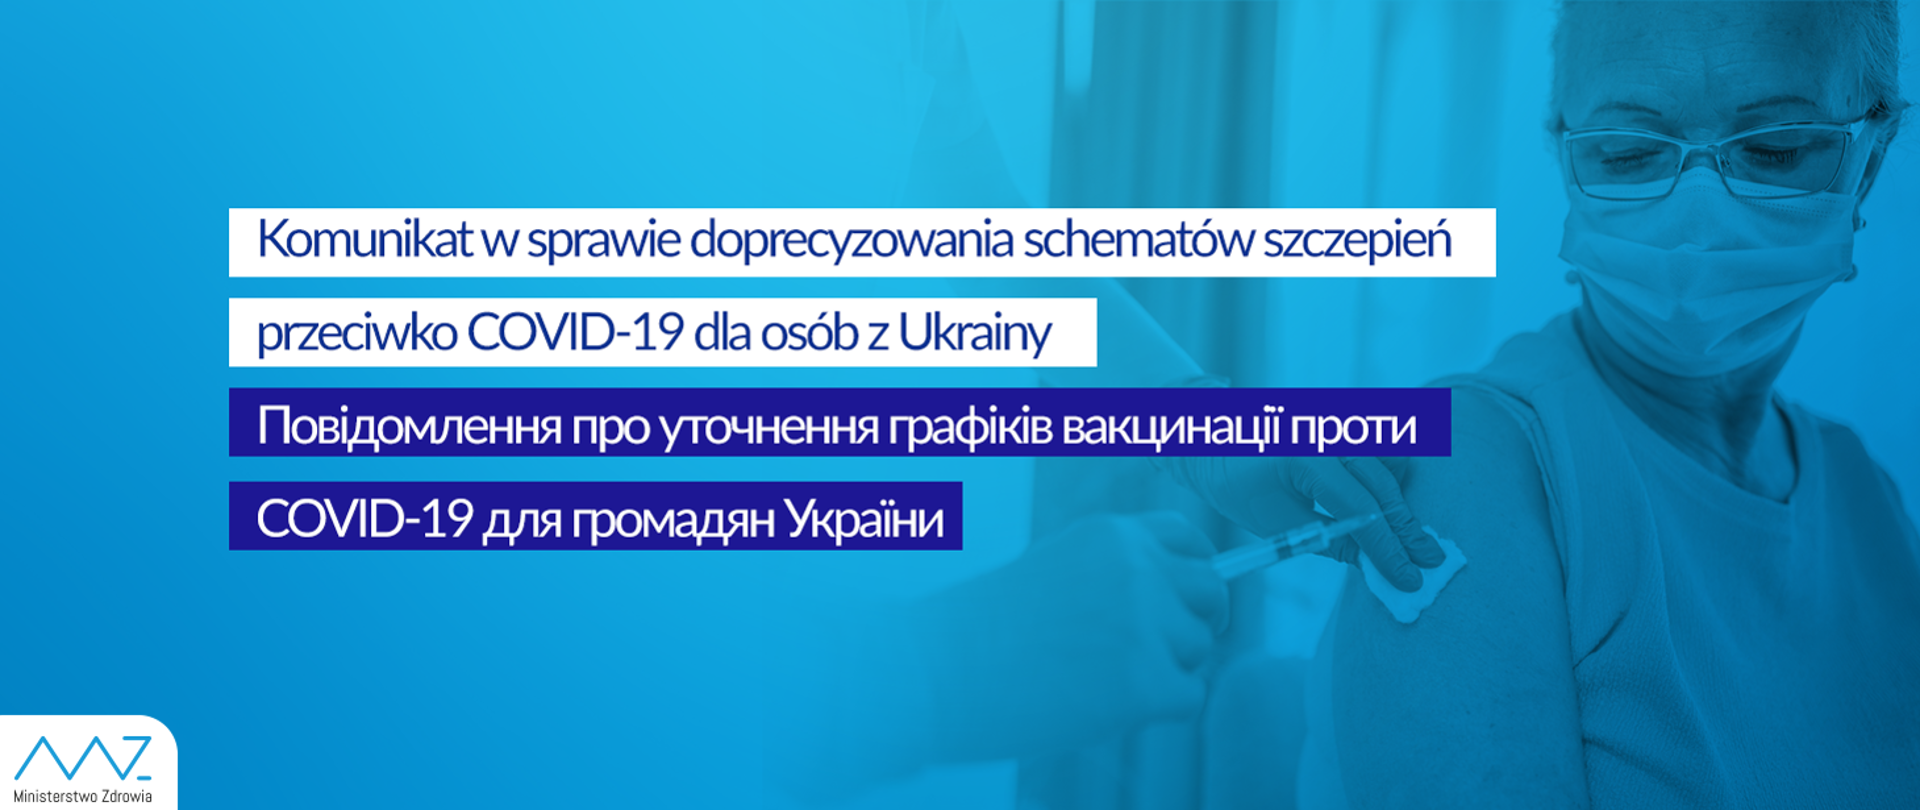 Komunikat w sprawie doprecyzowania schematów szczepień przeciwko COVID-19 dla osób z Ukrainy